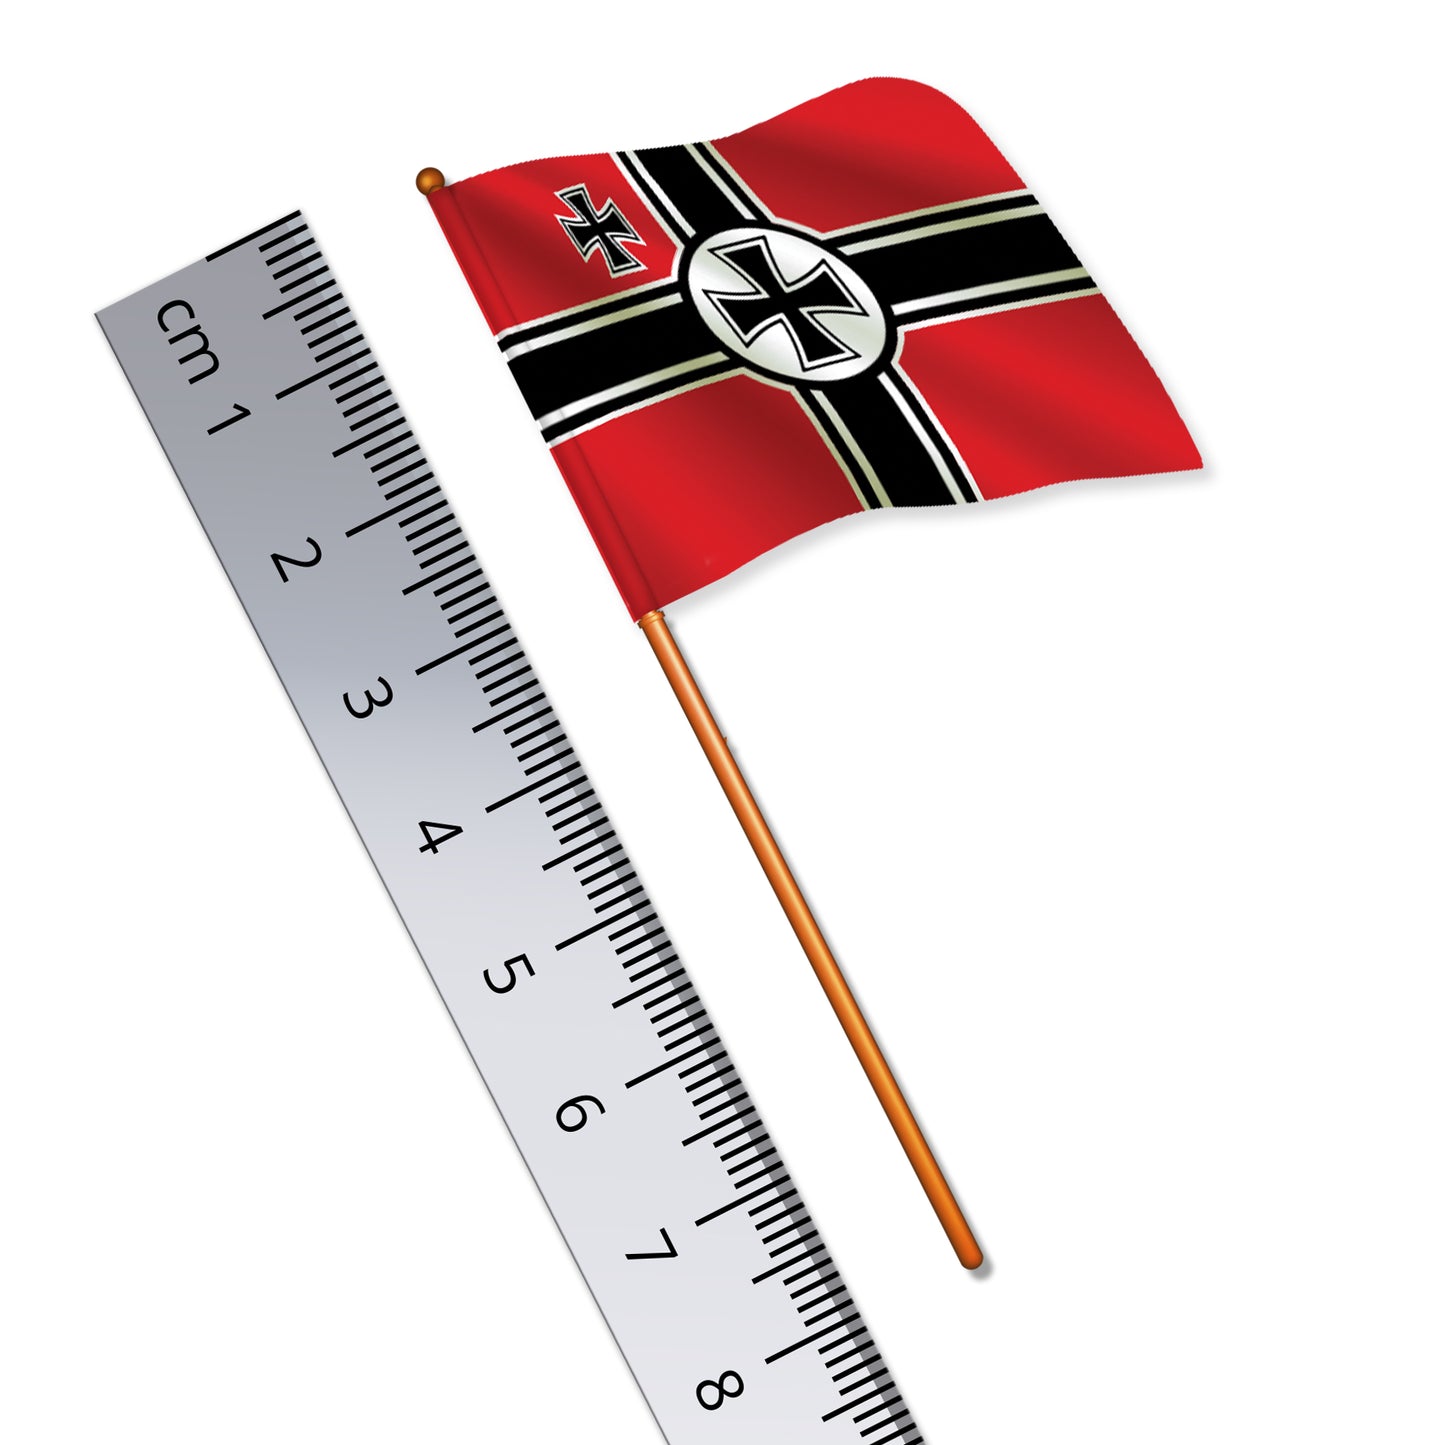 Germany ('Safe Design') Flag (World War II)